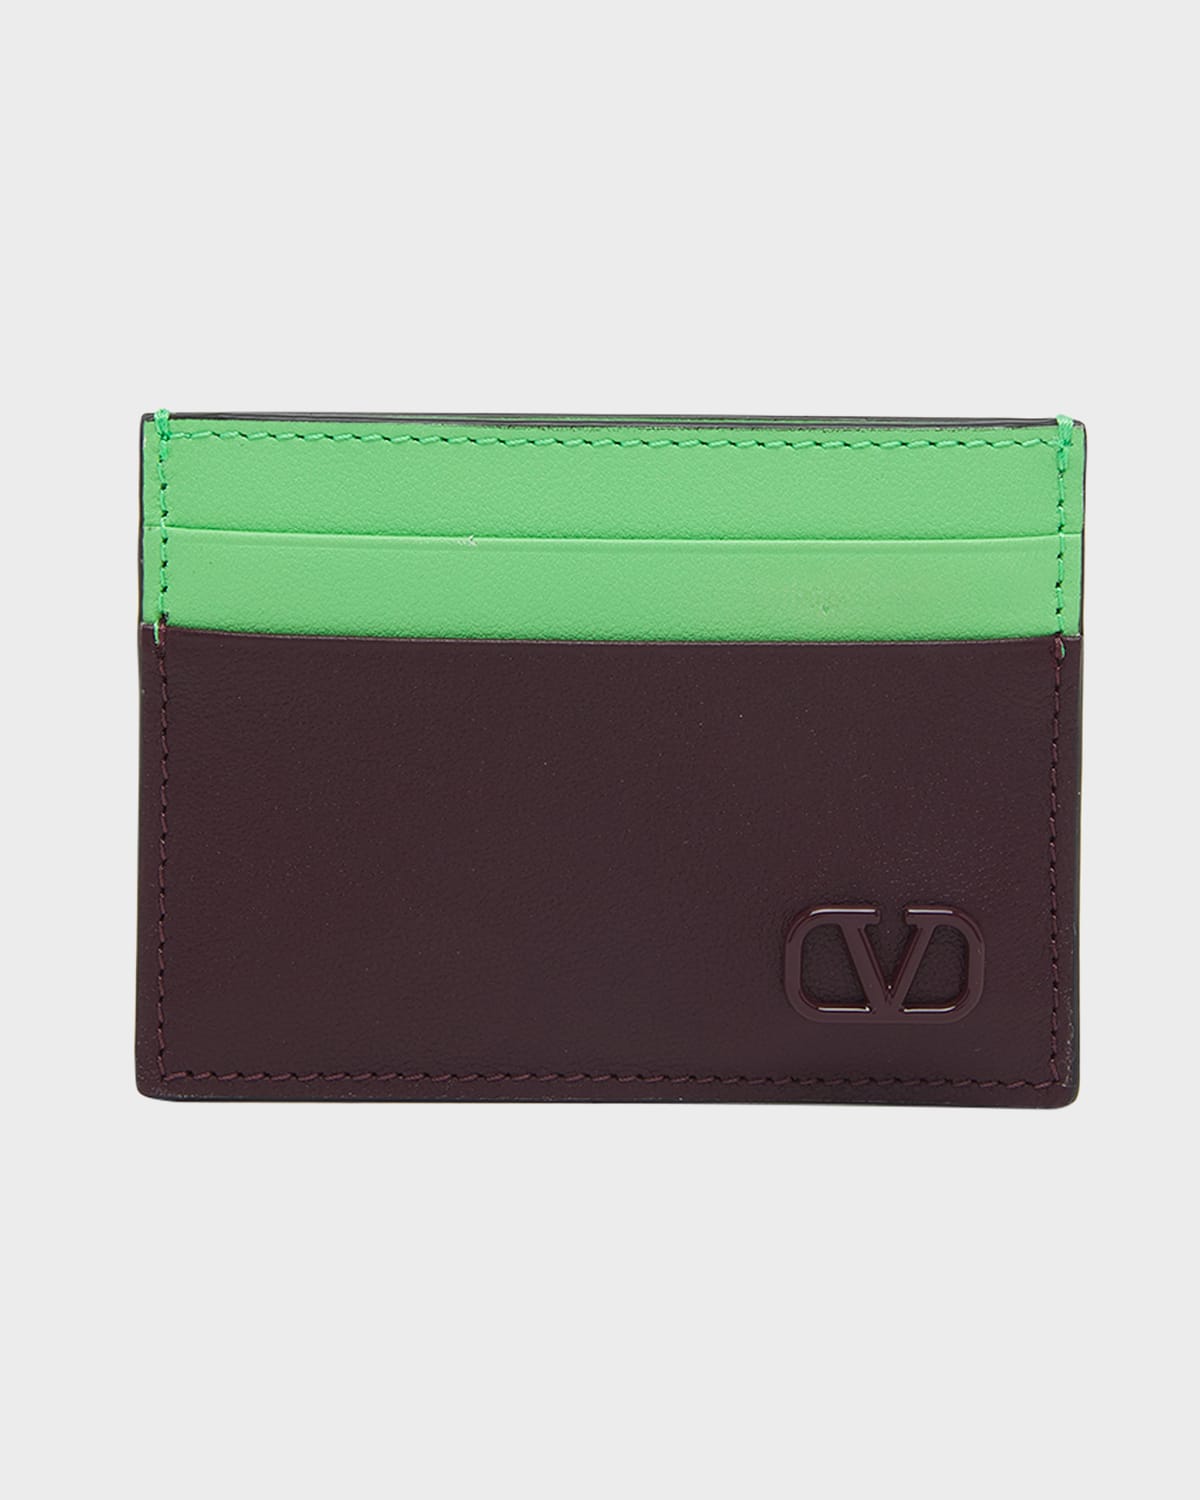 Valentino Garavani Men's Mini Vlogo Bicolor Leather Card Holder In Rubin/ice Mint